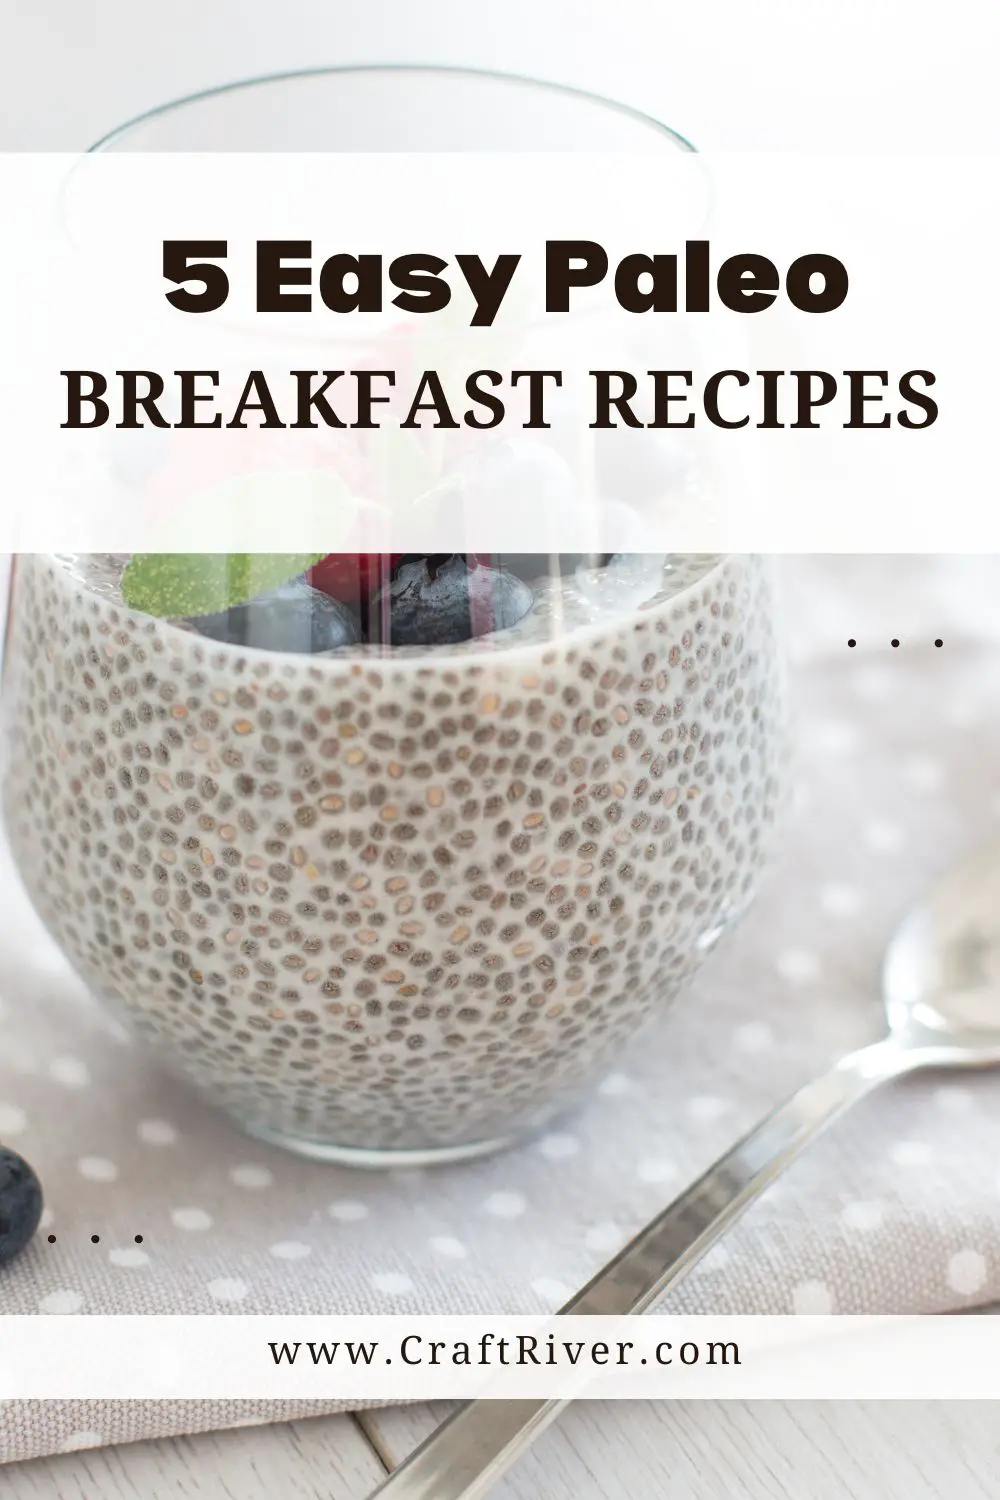 Easy Paleo Breakfast Recipes